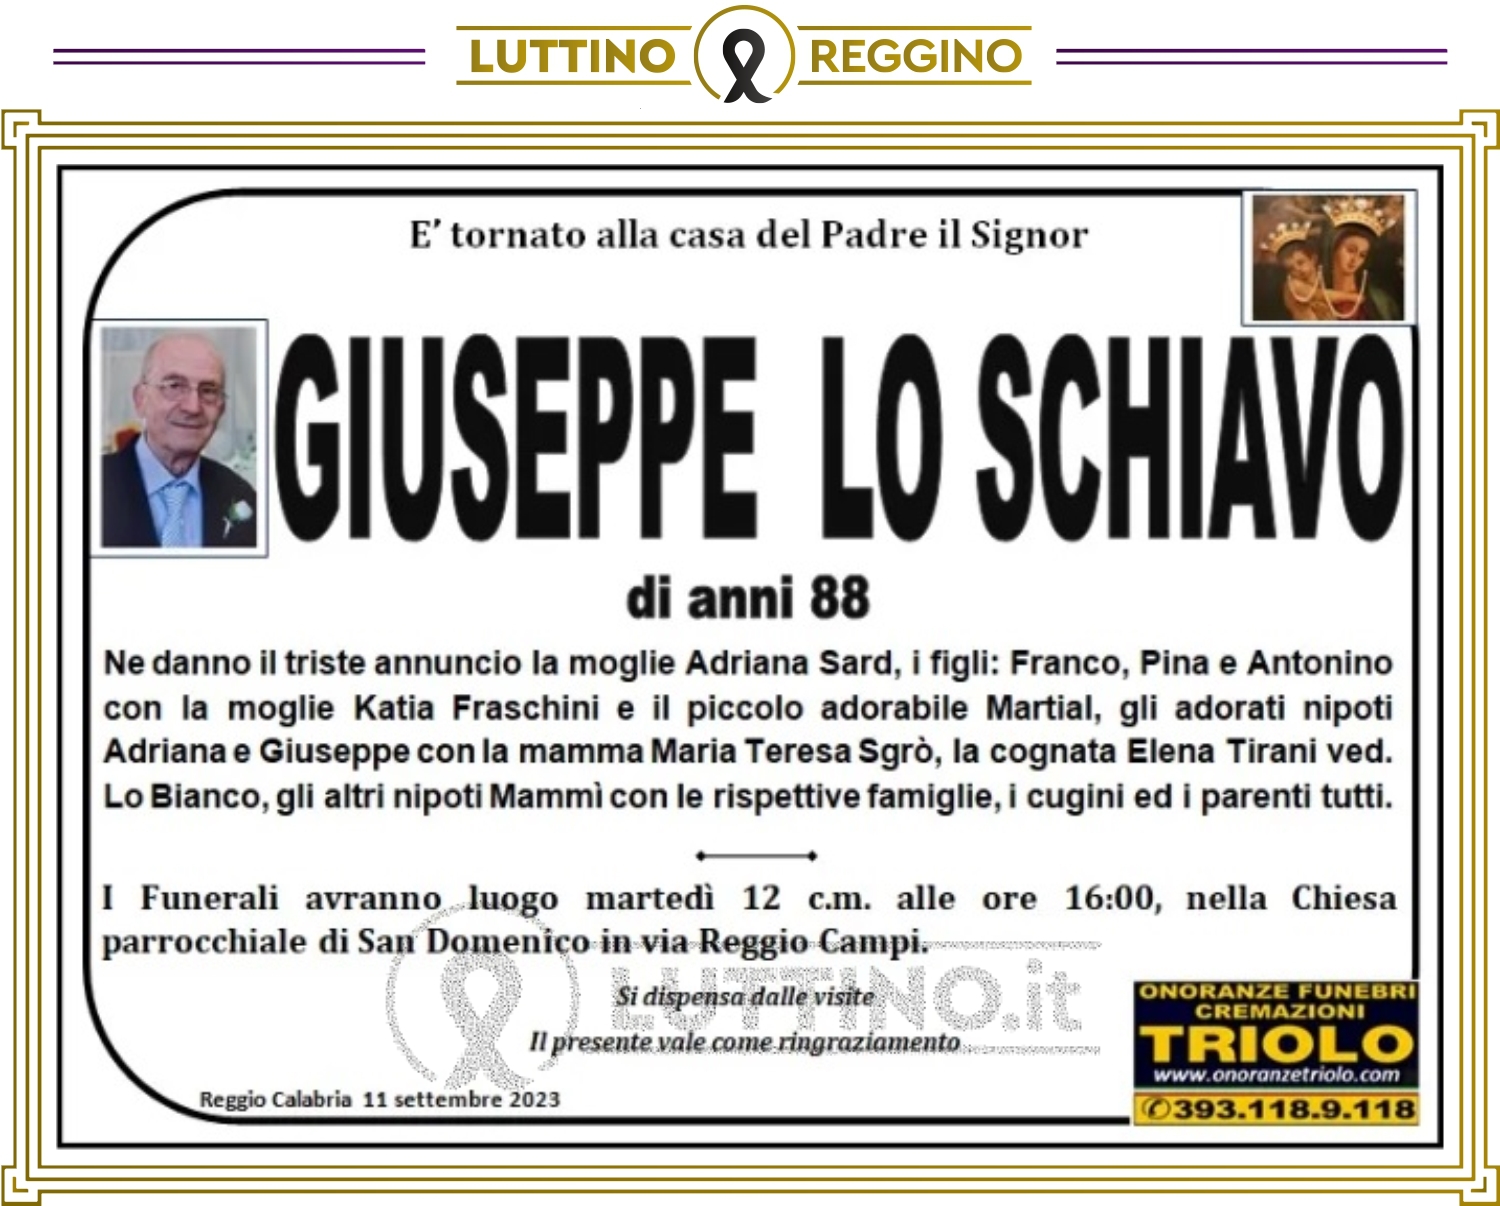 Giuseppe Lo Schiavo